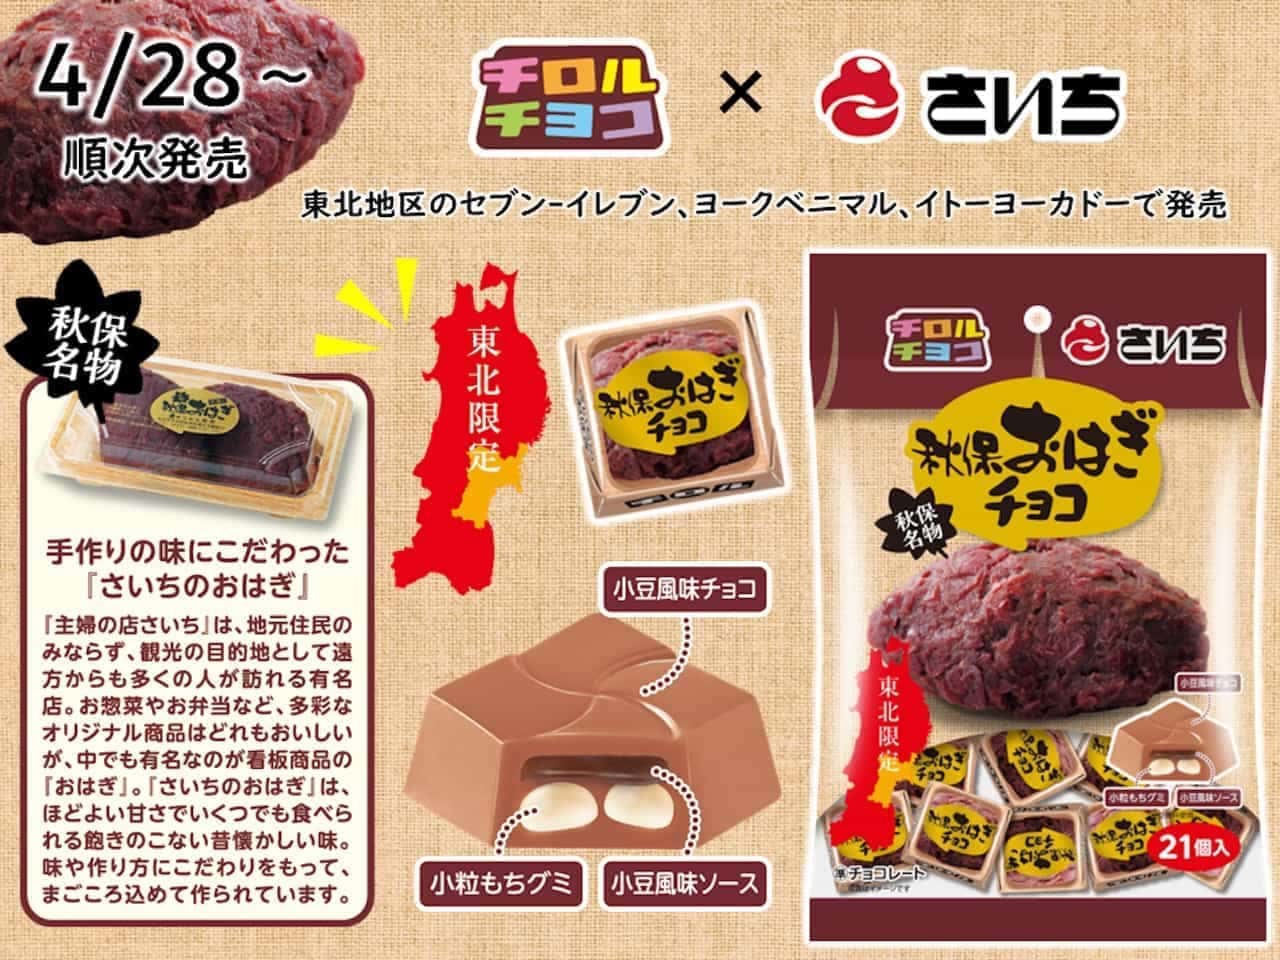 Chirorucoco "Saichi no Ohagi Chocolate [Bag]".